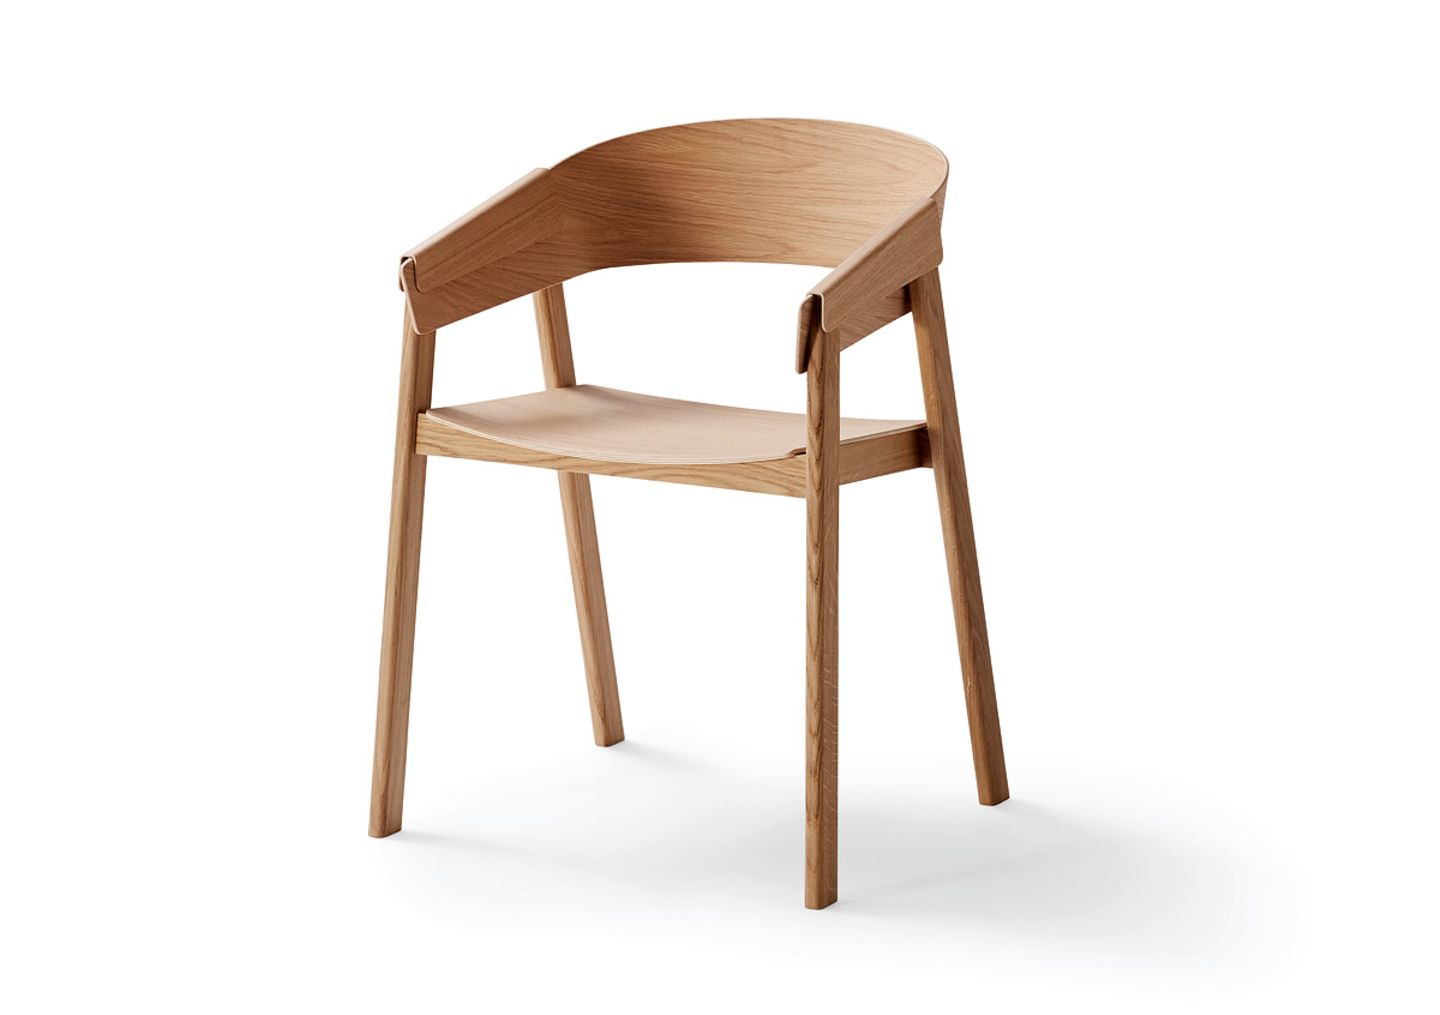 Stuhl "Cover Chair" von Muuto